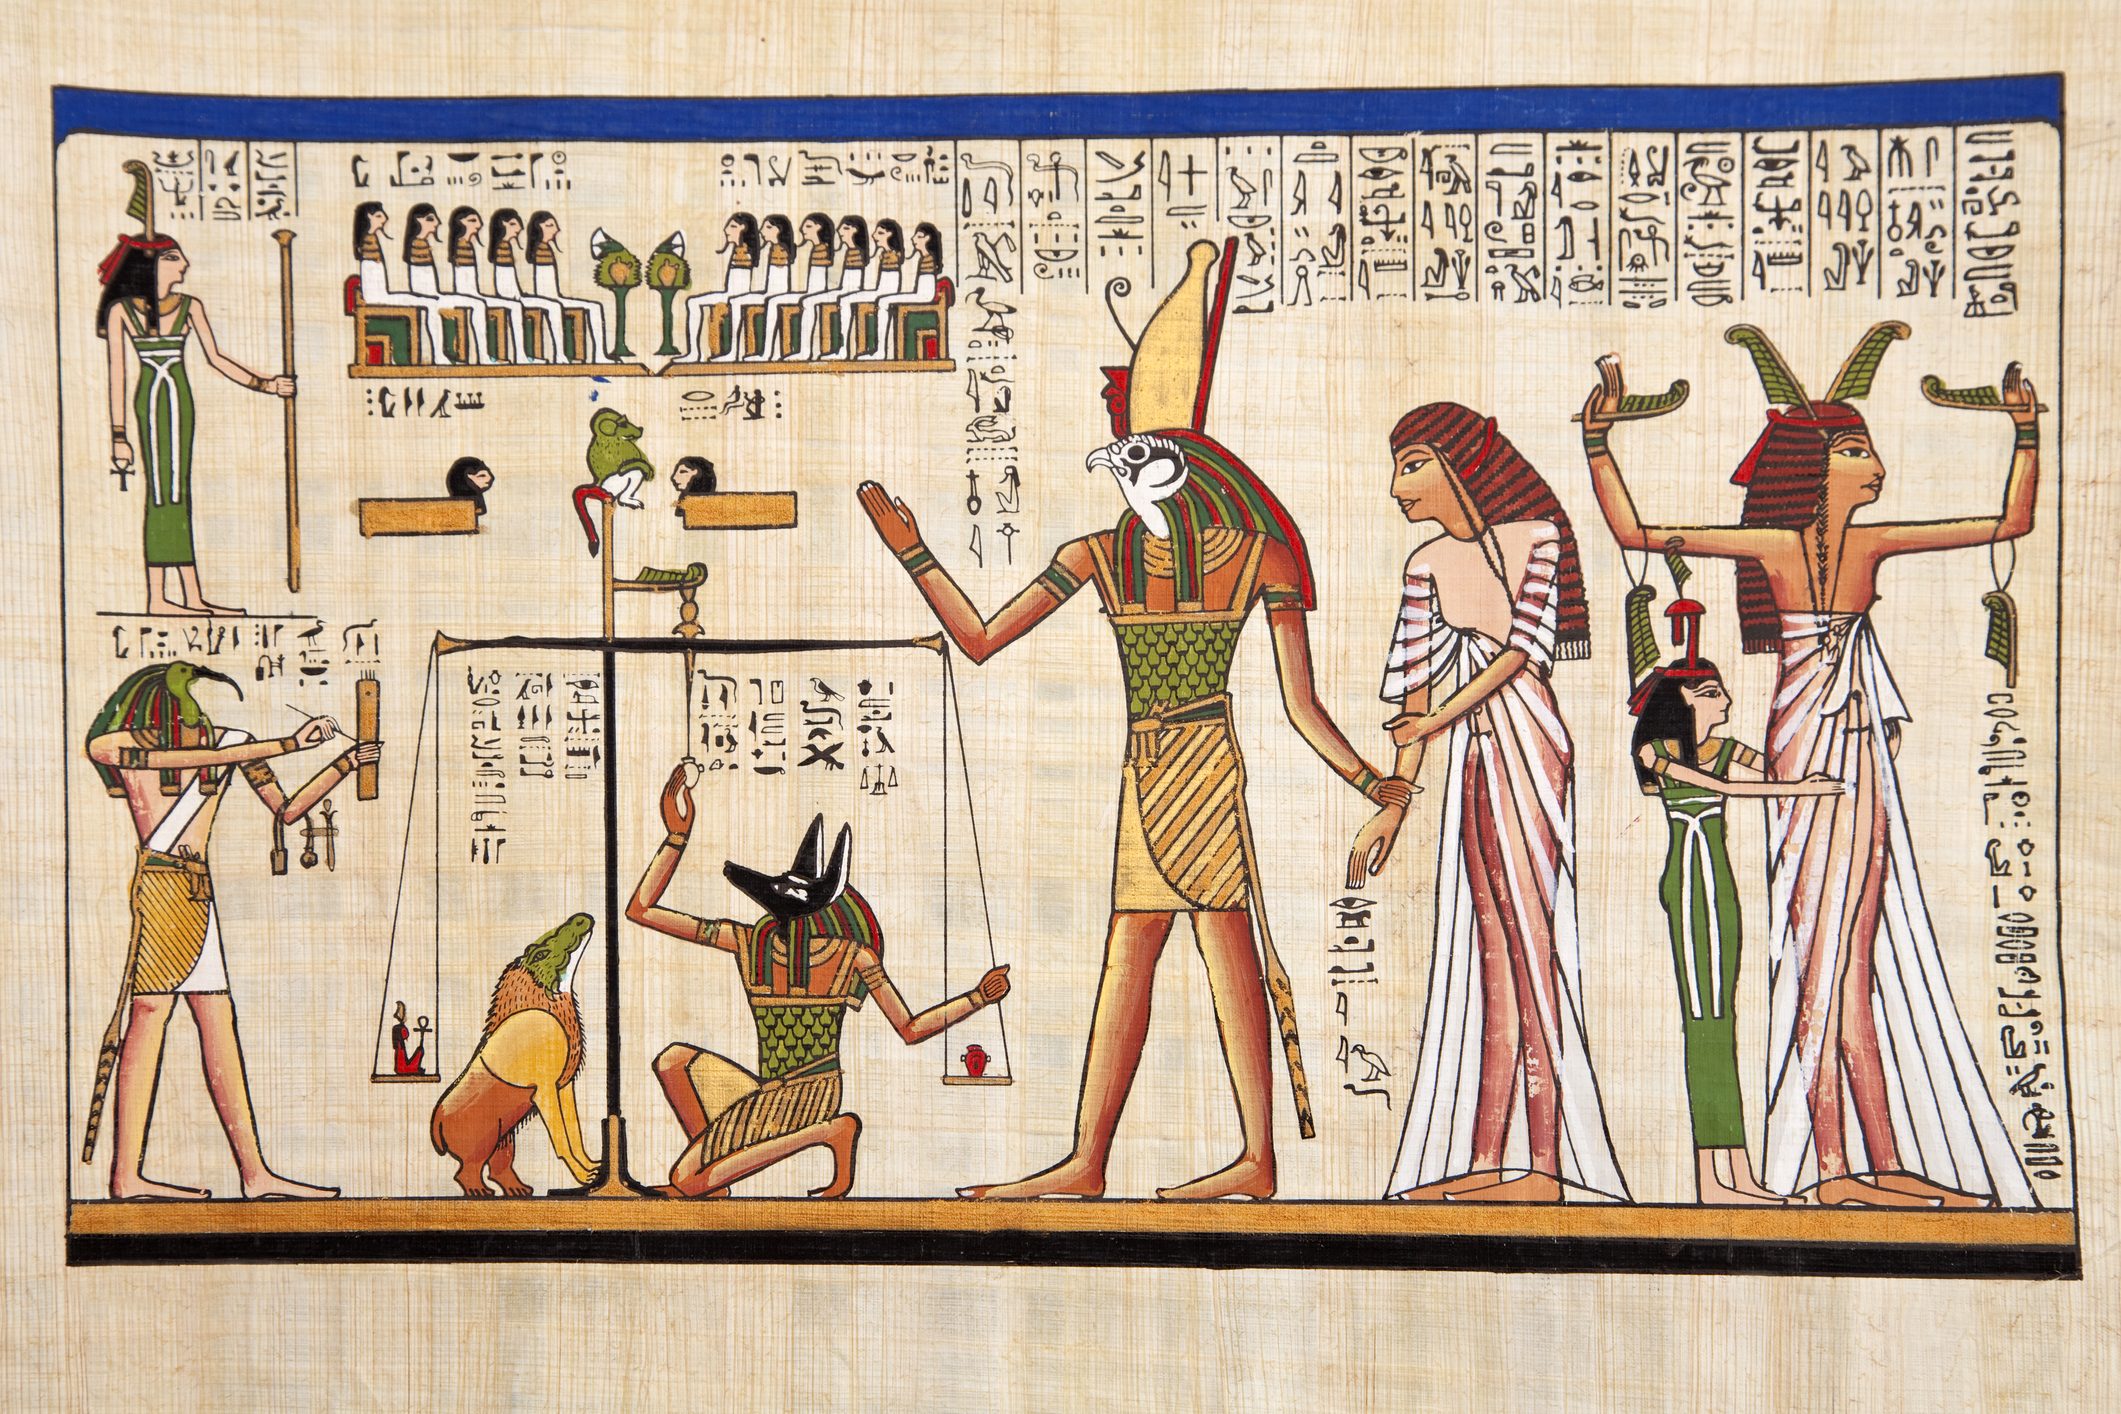 لم يكن كل الفراعنة بالقوة نفسها لكن هؤلاء الـ9 كتبوا تاريخ مصر القديمة عربي بوست